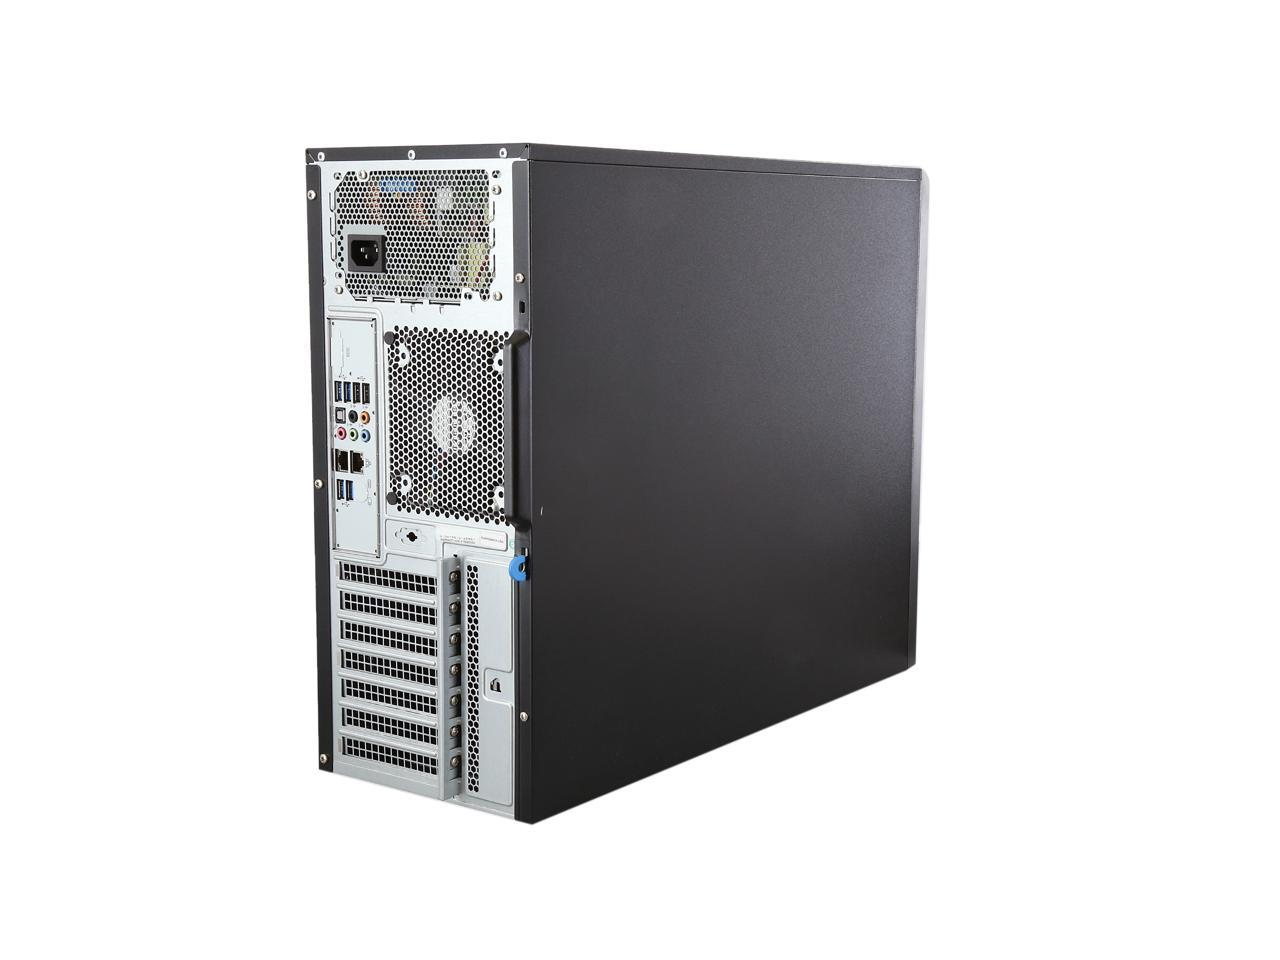 SUPERMICRO SYS-7038A-I Mid-Tower Server Barebone - Newegg.com